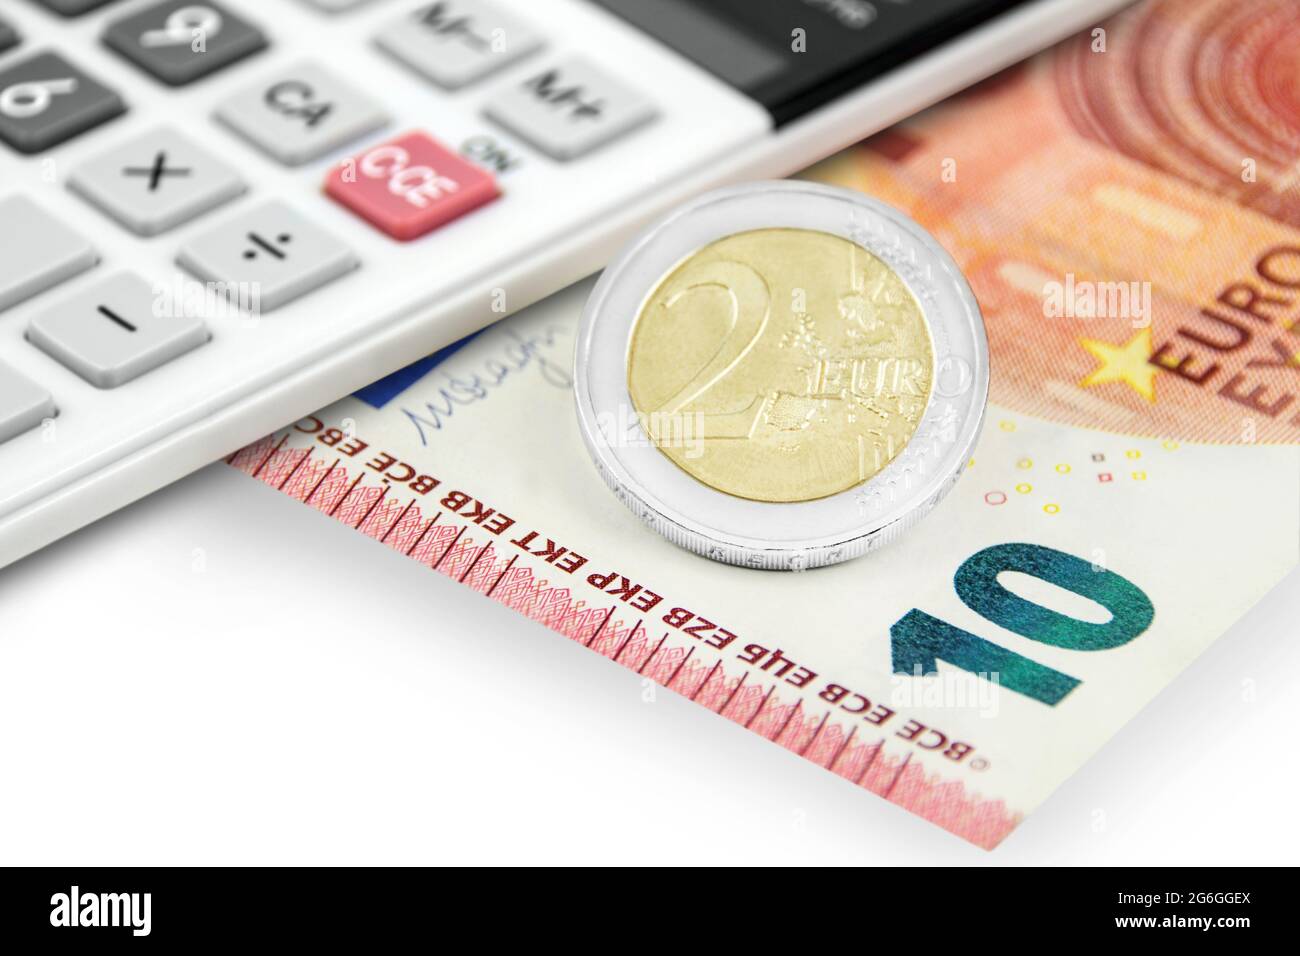 RECHNER und 12,00 Euro auf weissem Hintergrund Foto Stock